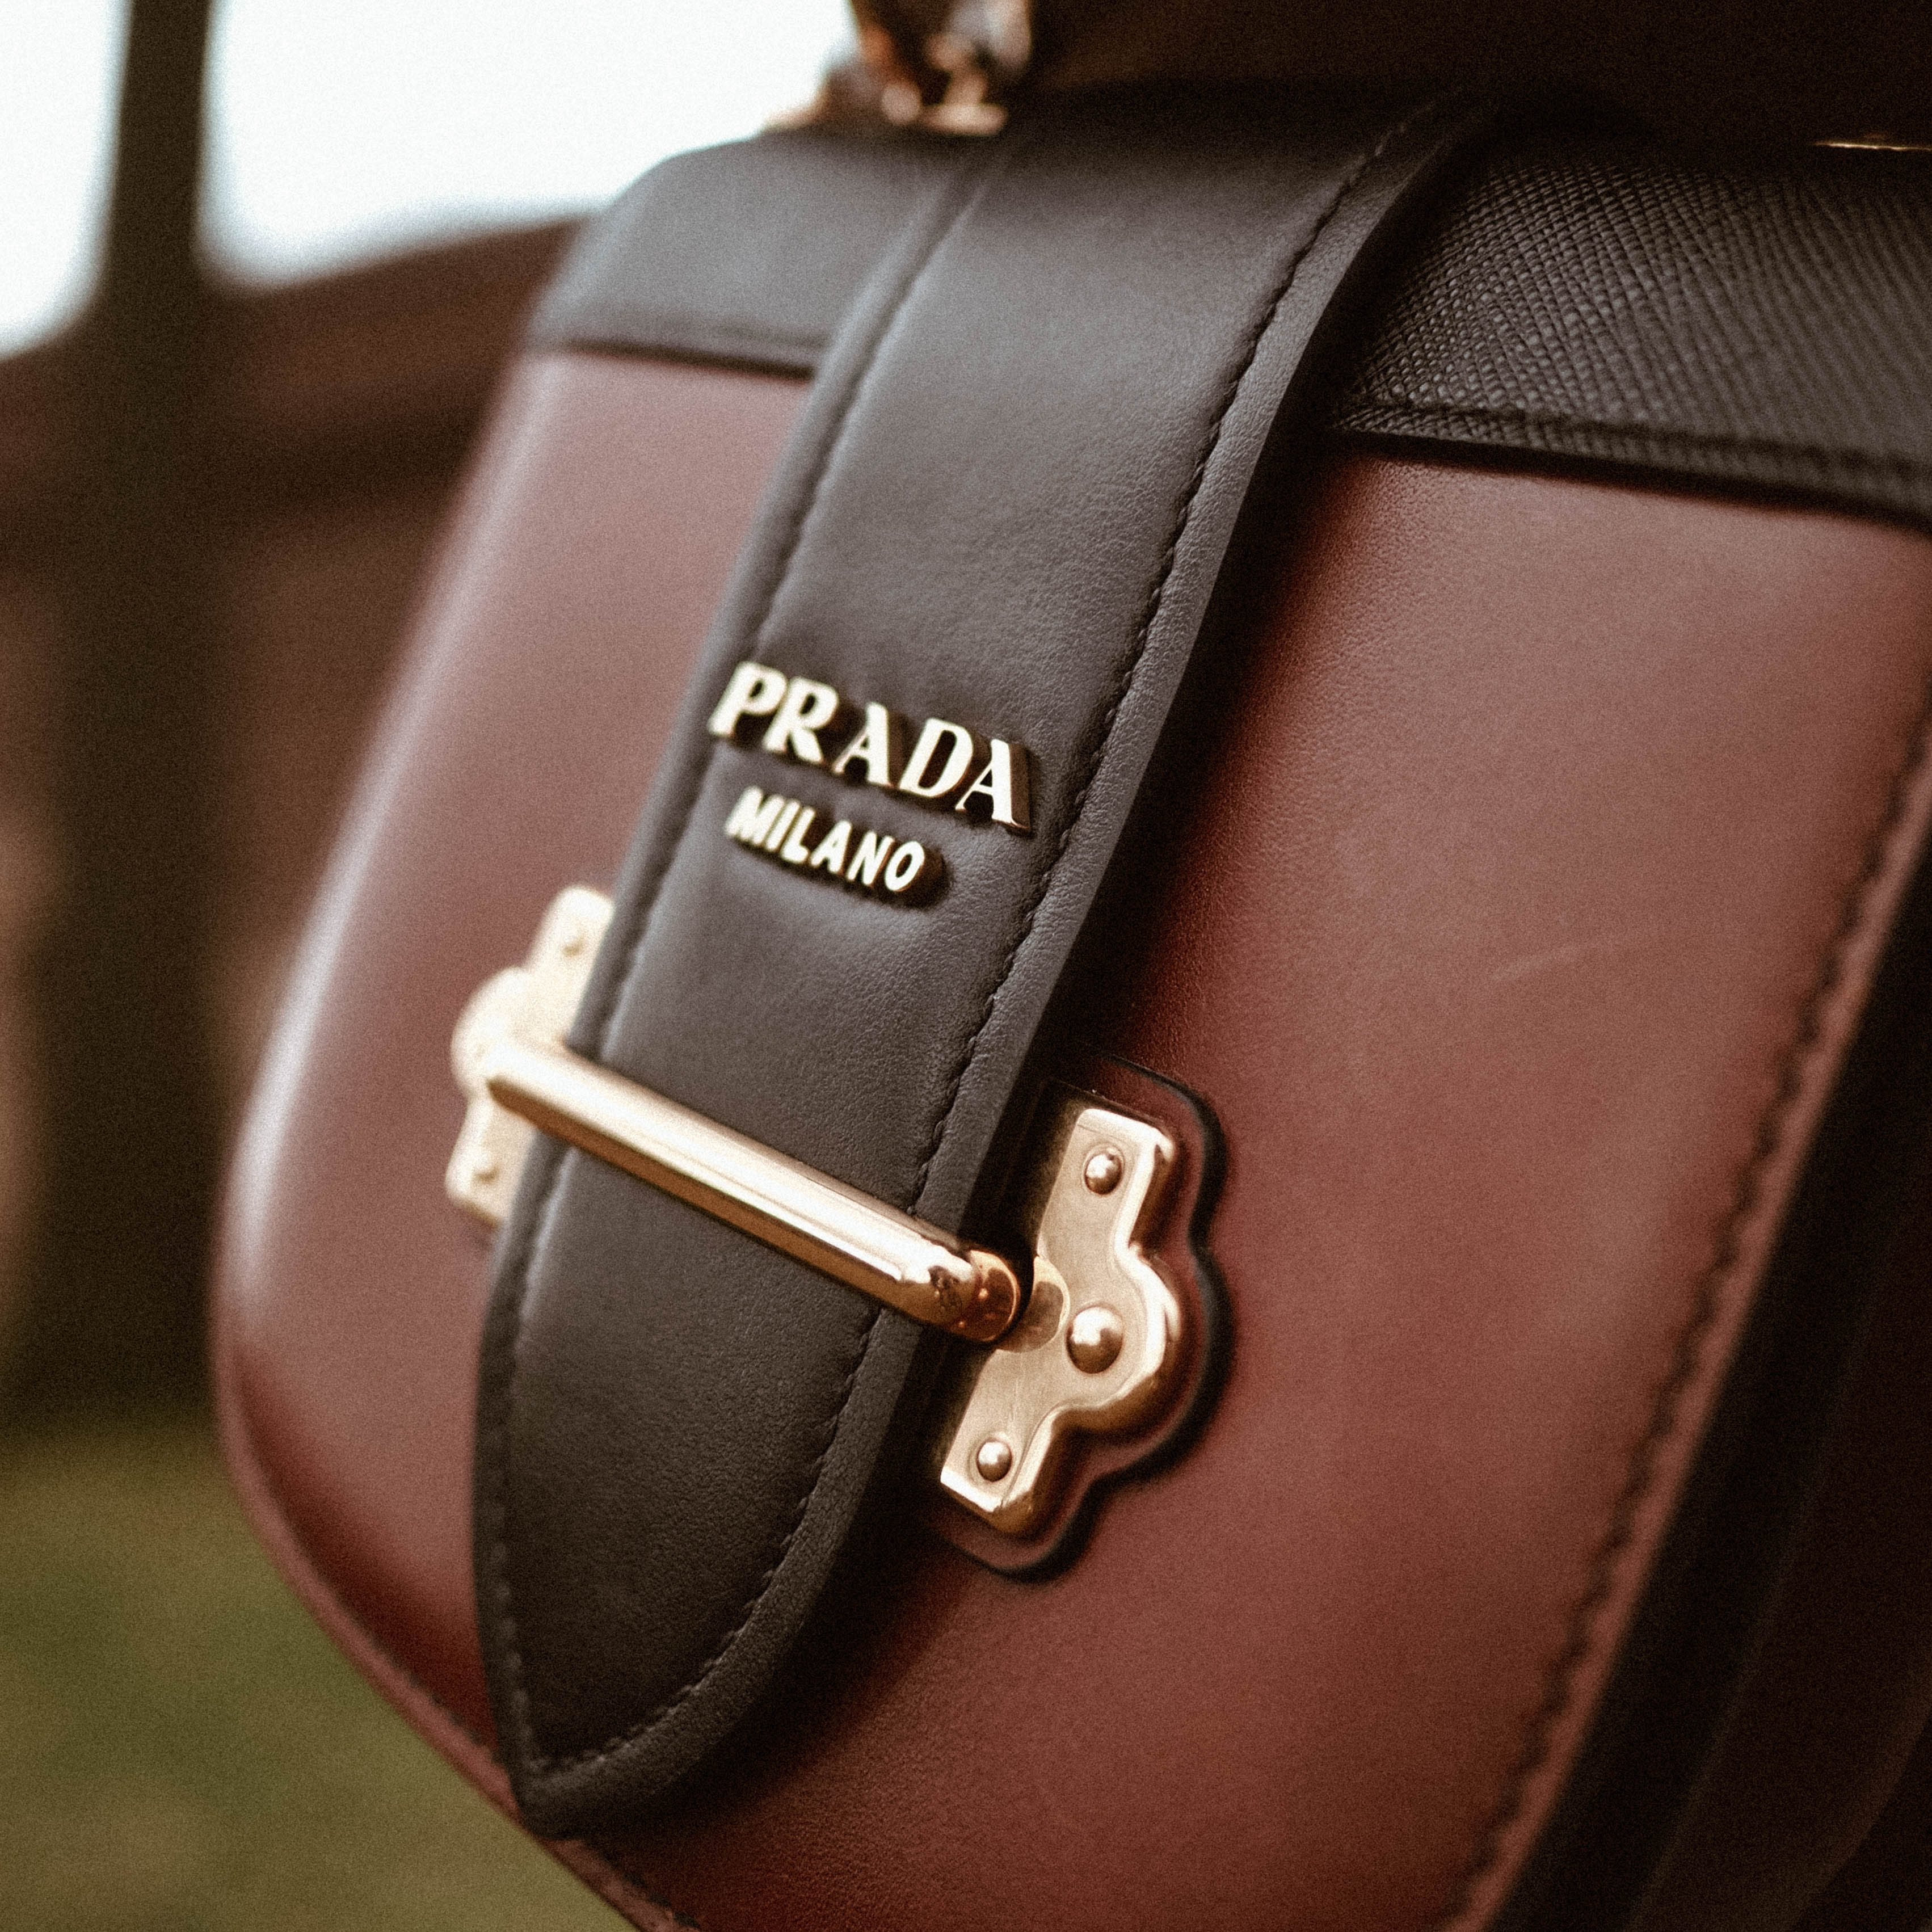 prada inspired bag